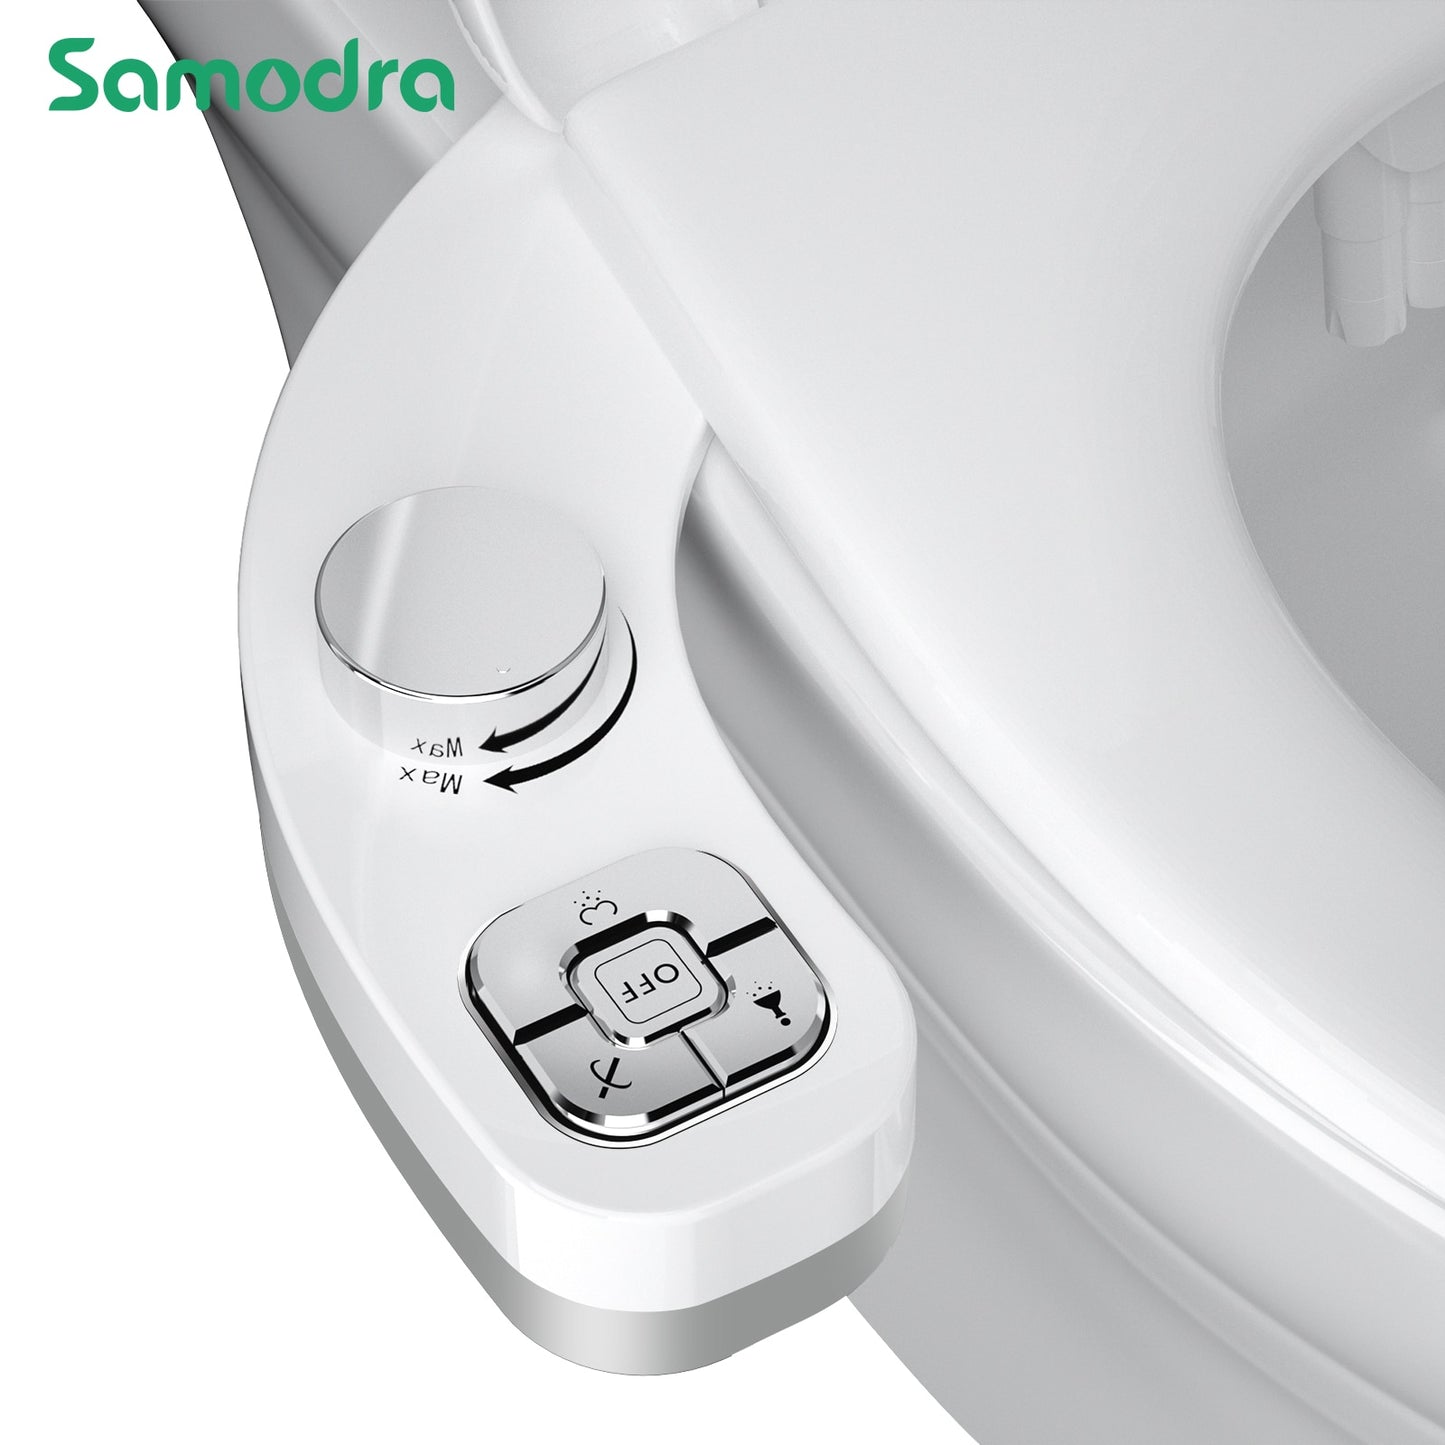 Non-Electric Button Bidet Toilet Seat Attachment